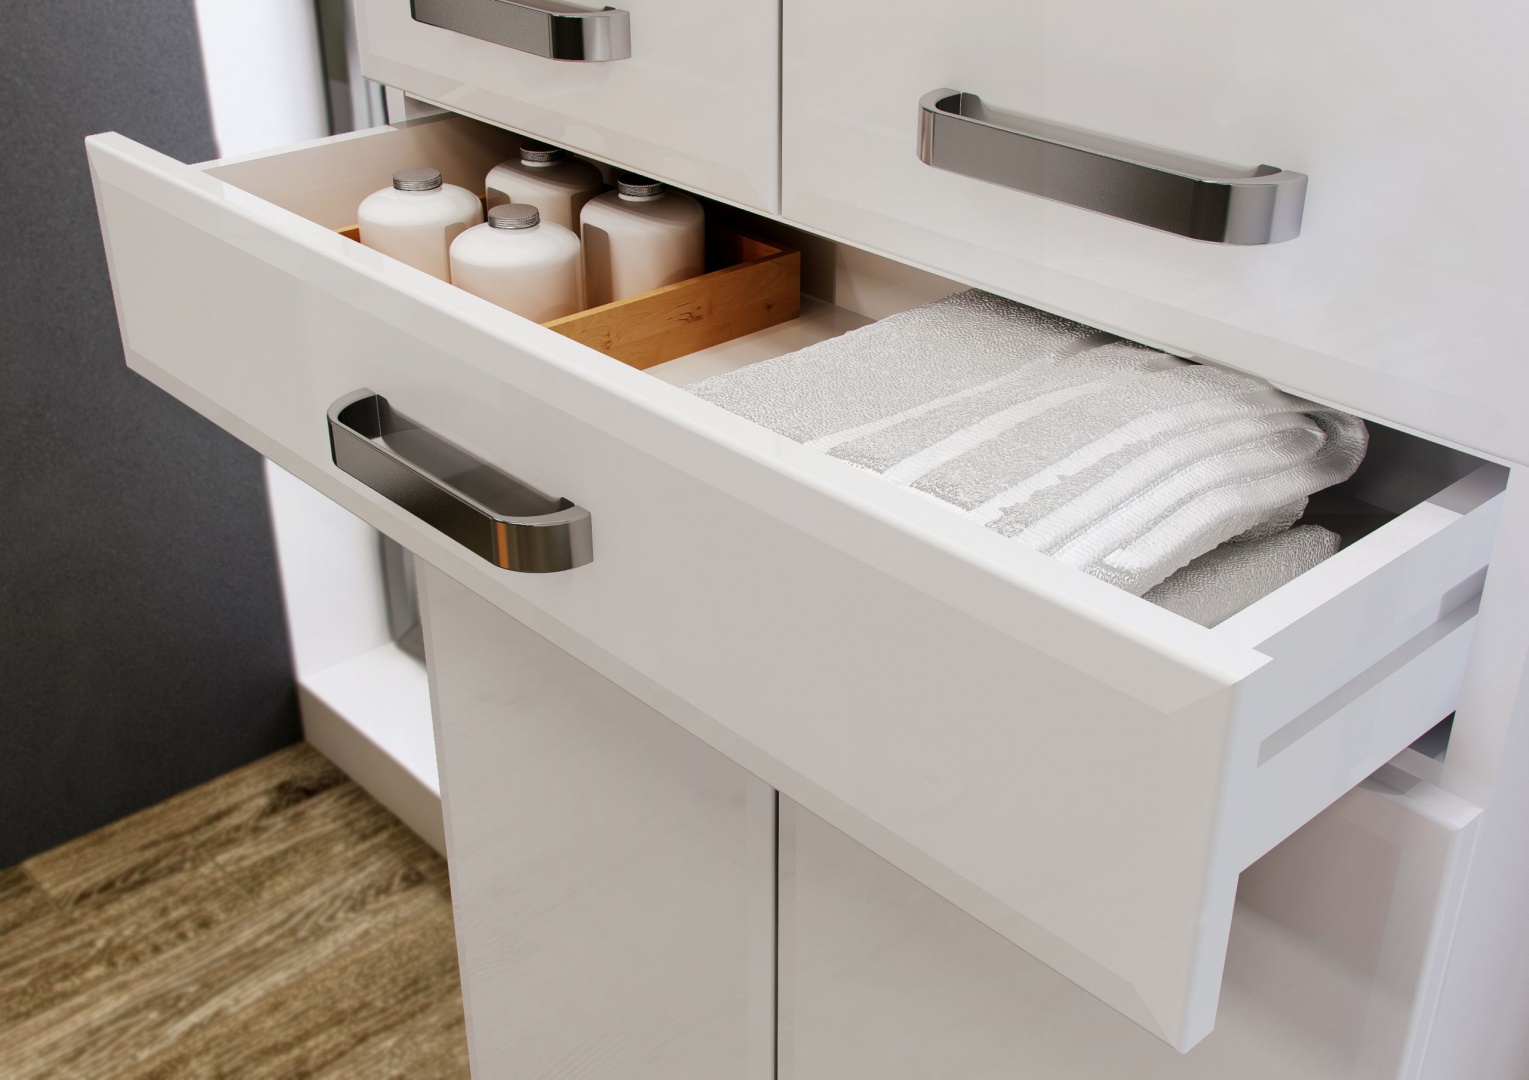 Kolekcja Amigo Elita to zestaw mebli zaprojektowanych z myślą o przechowywaniu. Wysoki słupek oferuje pomysłową szufladę, np. na 
ręczniki. Fot. Elita.